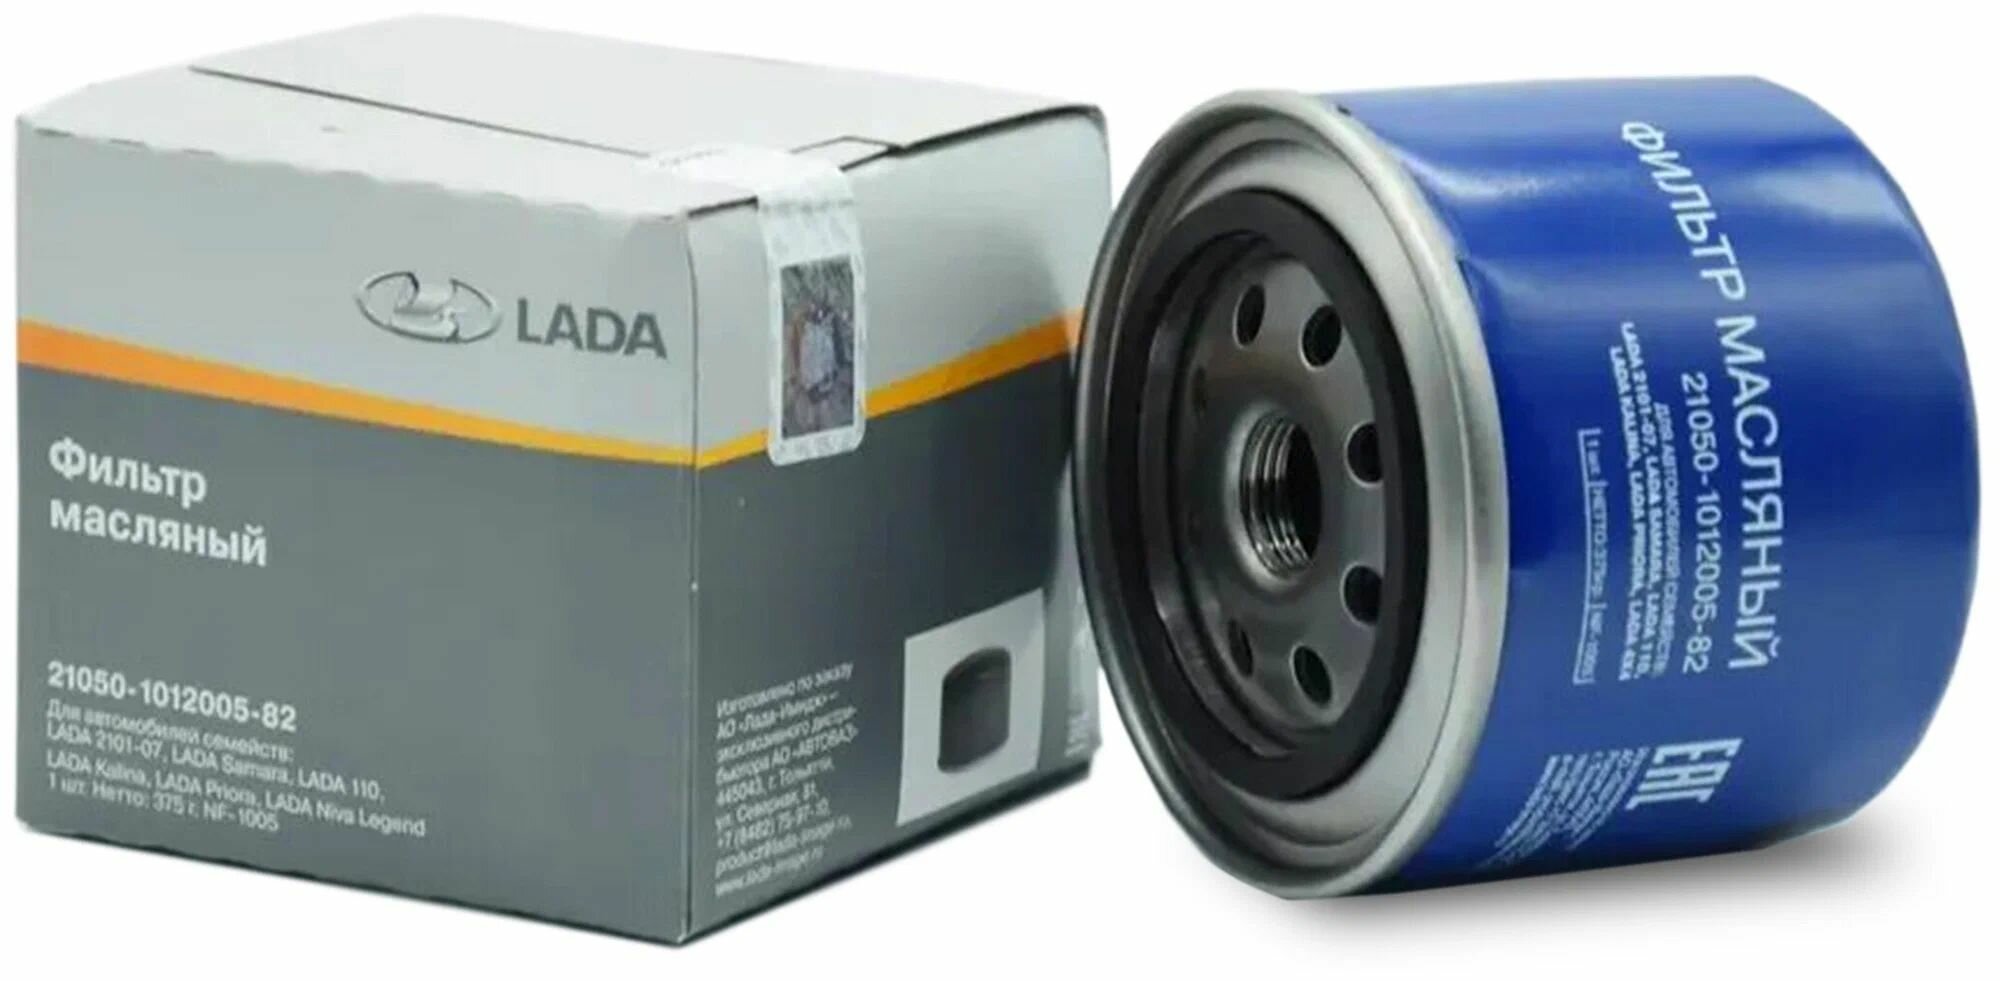 Фильтр масляный Lada 21050101200582